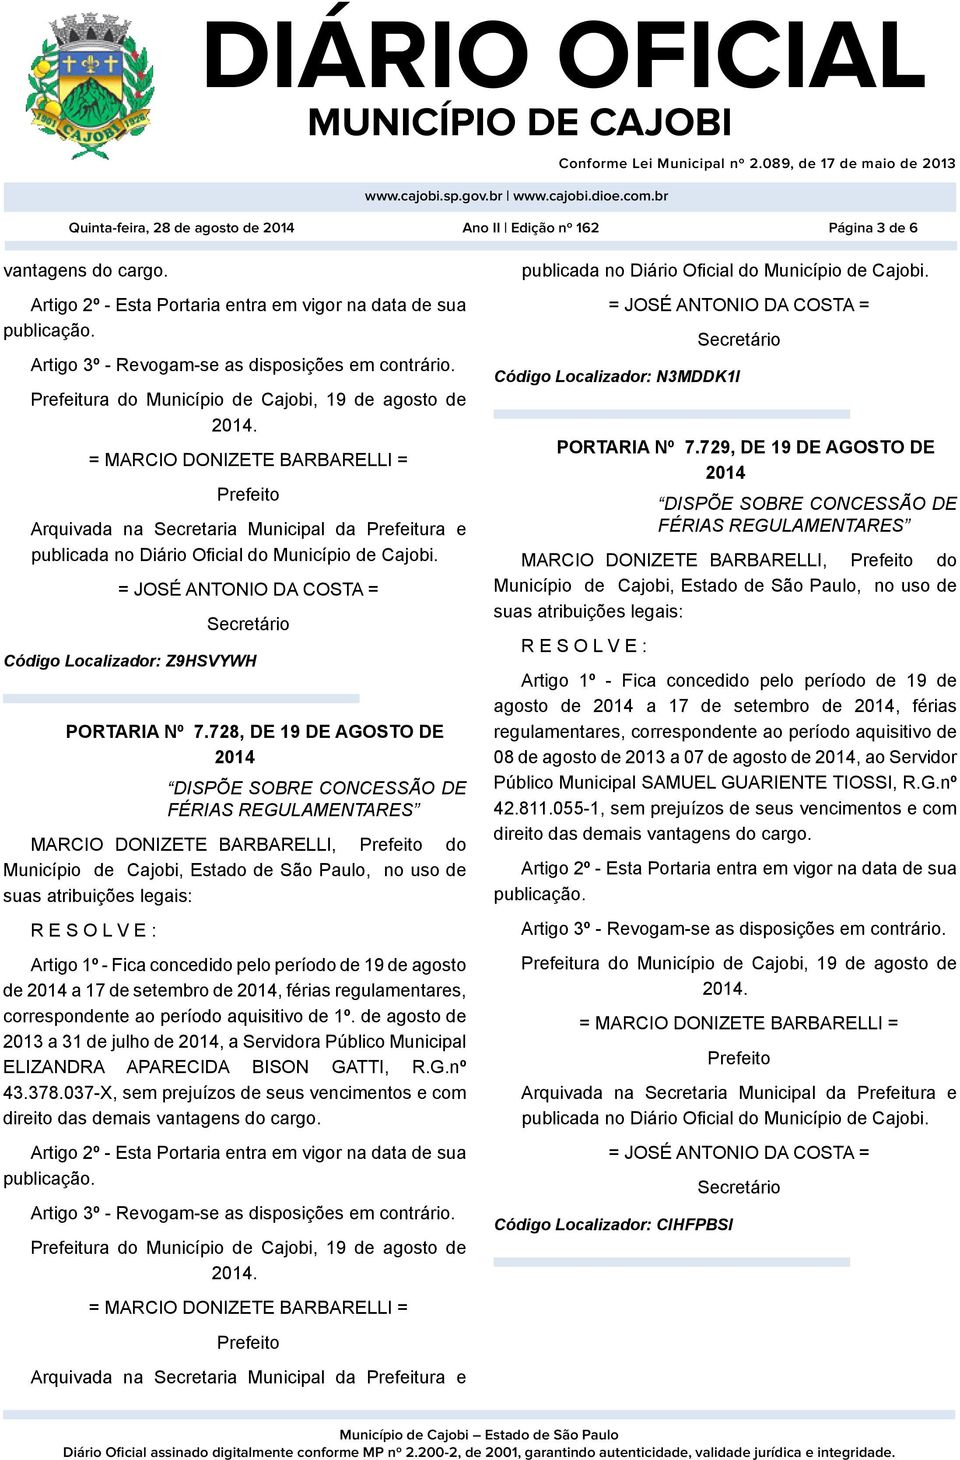 1º. de agosto de 2013 a 31 de julho de, a Servidora Público Municipal ELIZANDRA APARECIDA BISON GATTI, R.G.nº 43.378.